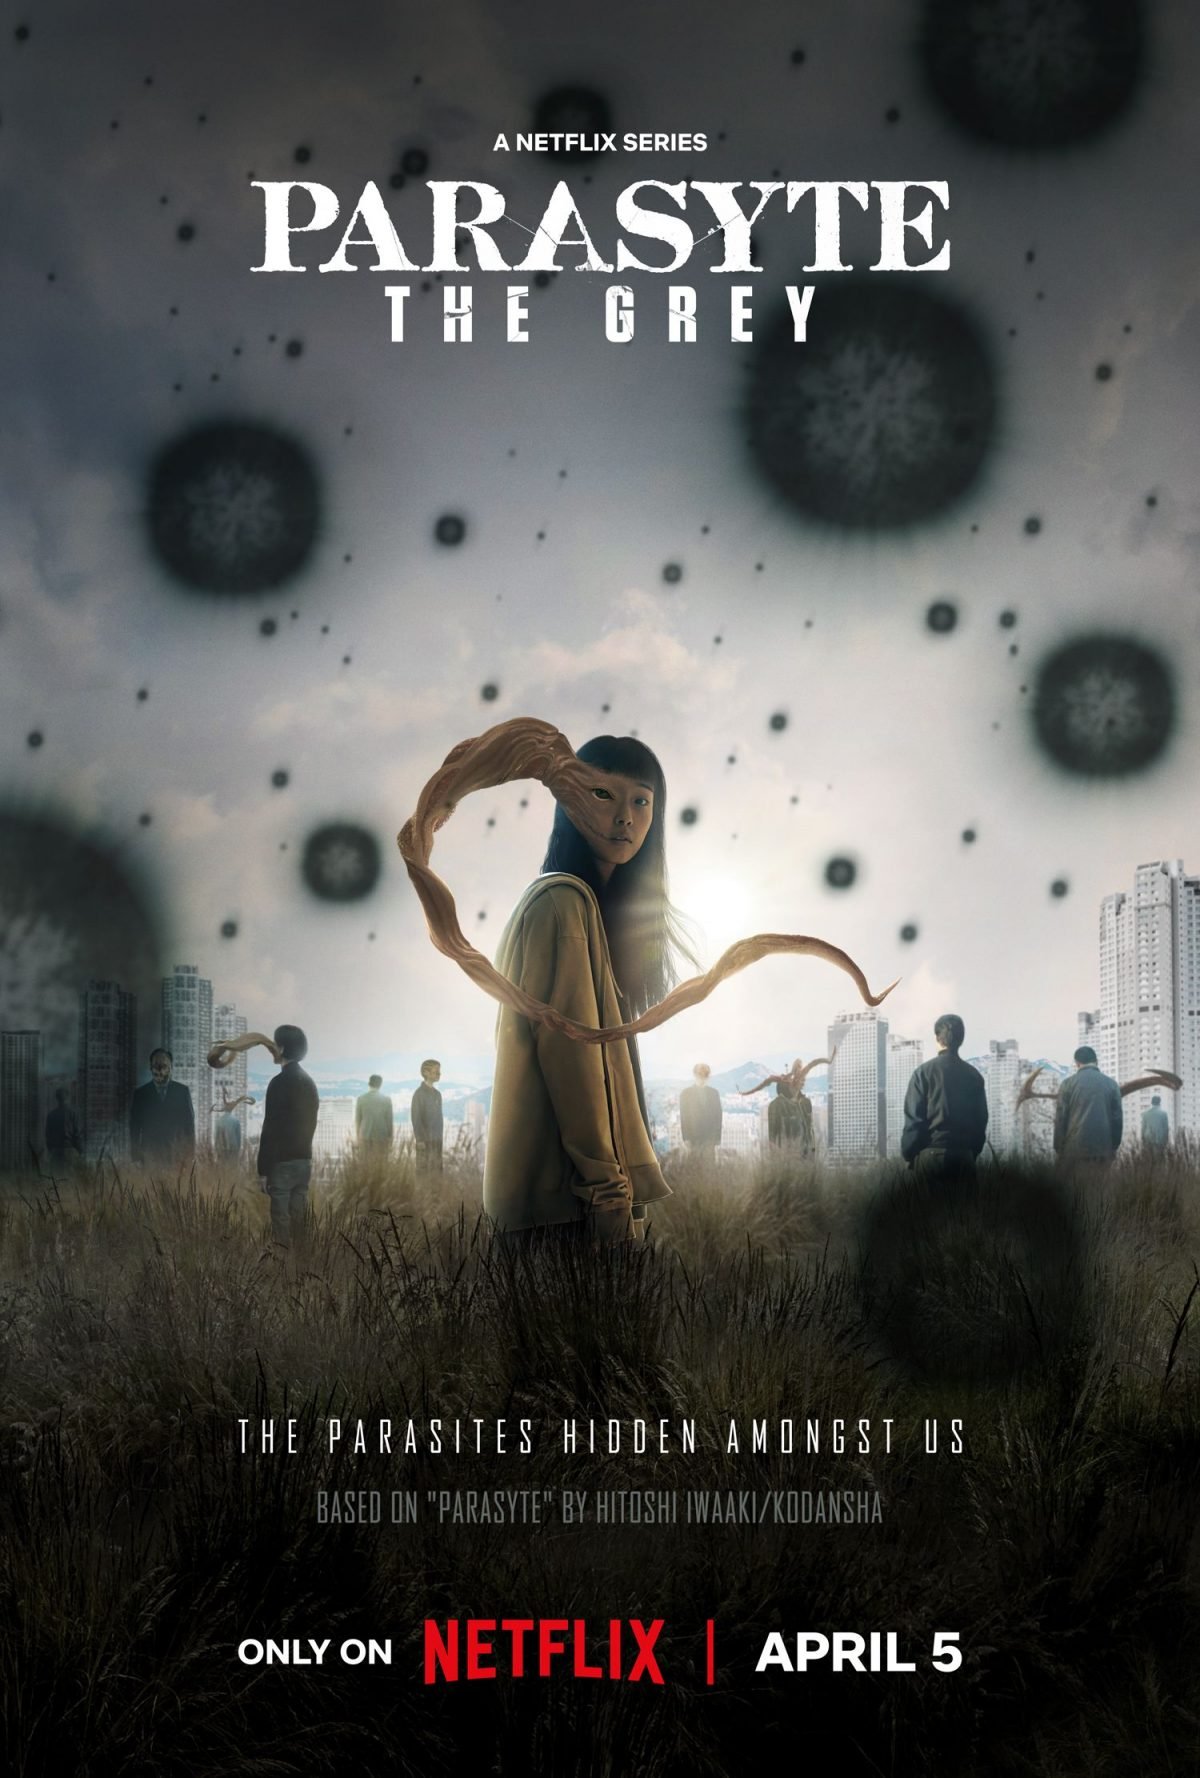 Netflix's Parasyte the Grey